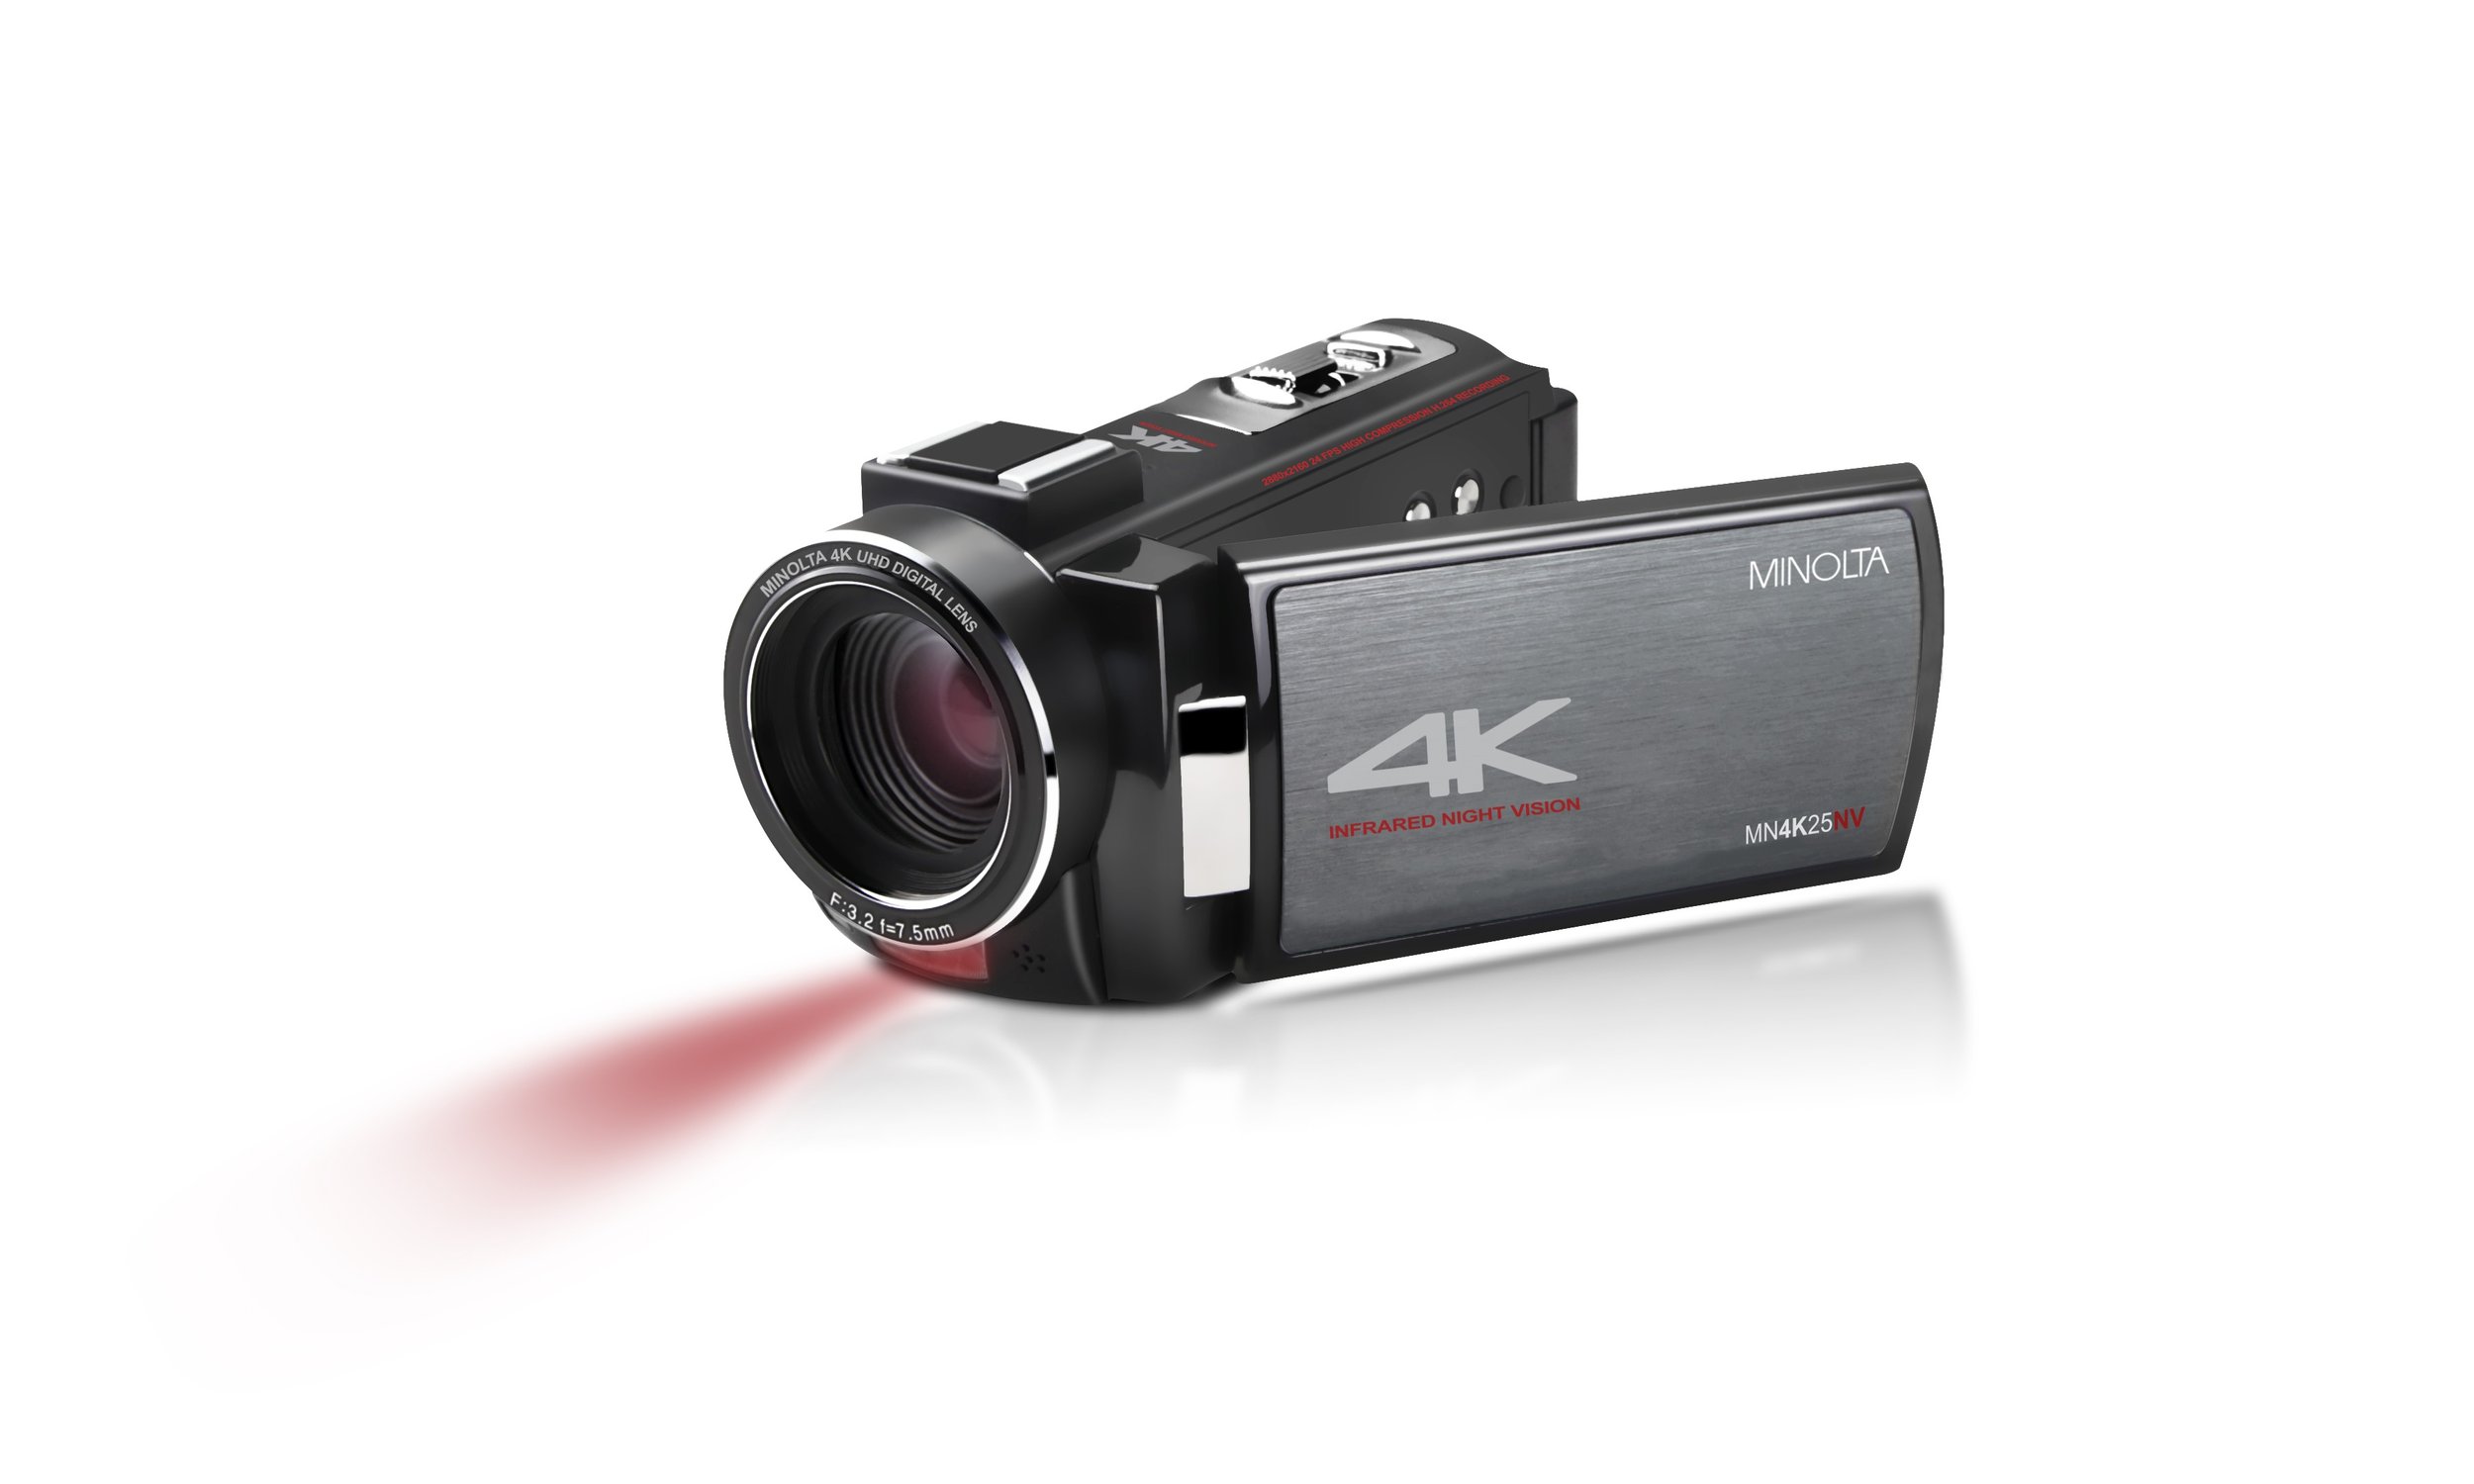 MN4K25NV 4K Ultra HD IR Night Vision Camcorder — Minolta Digital